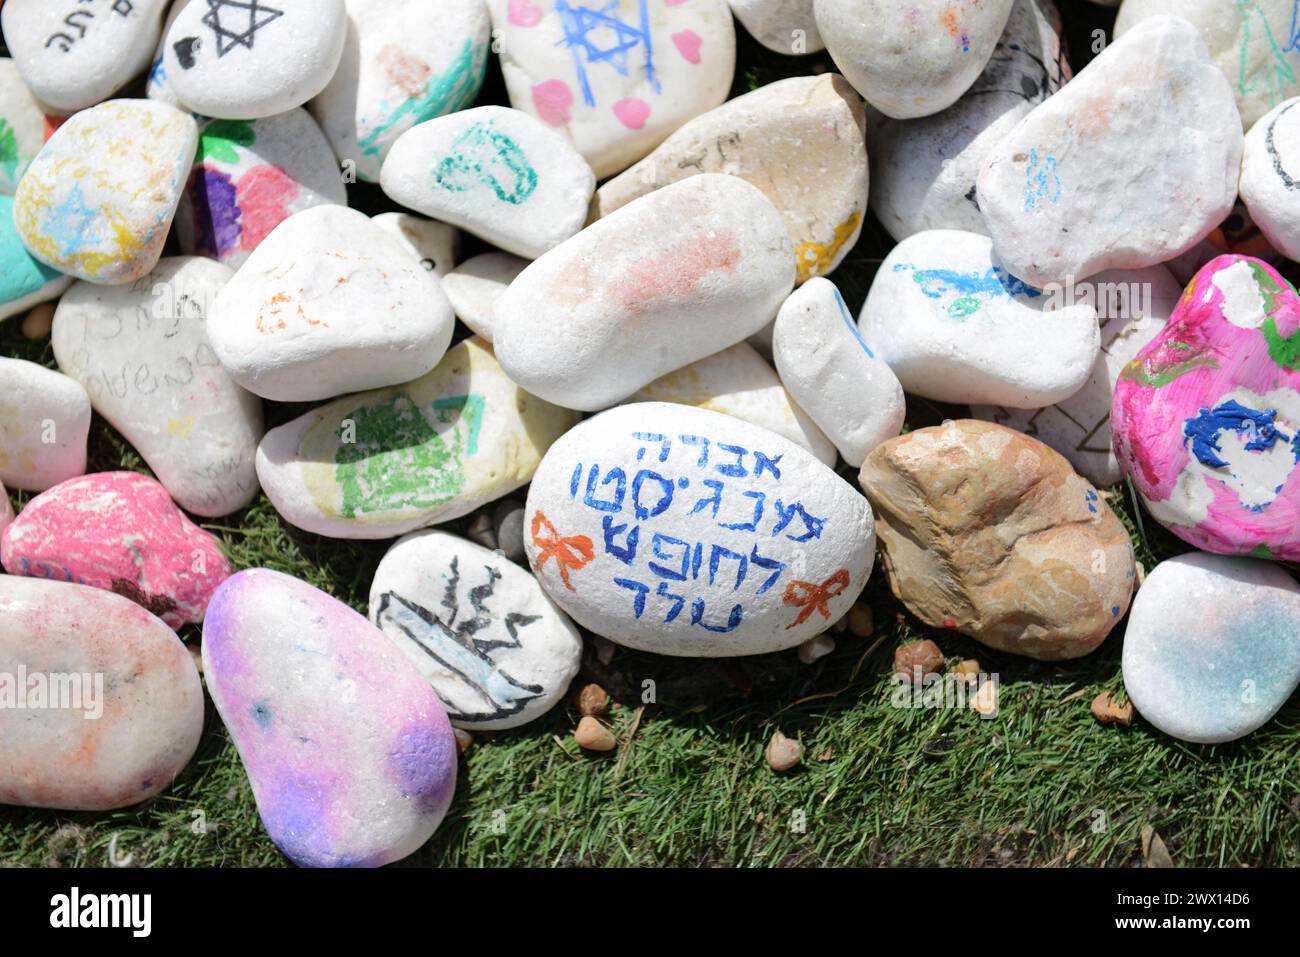 Pietre con disegni e messaggi per gli ostaggi a Gaza. Piazza degli ostaggi, Tel-Aviv, Israele. Foto Stock